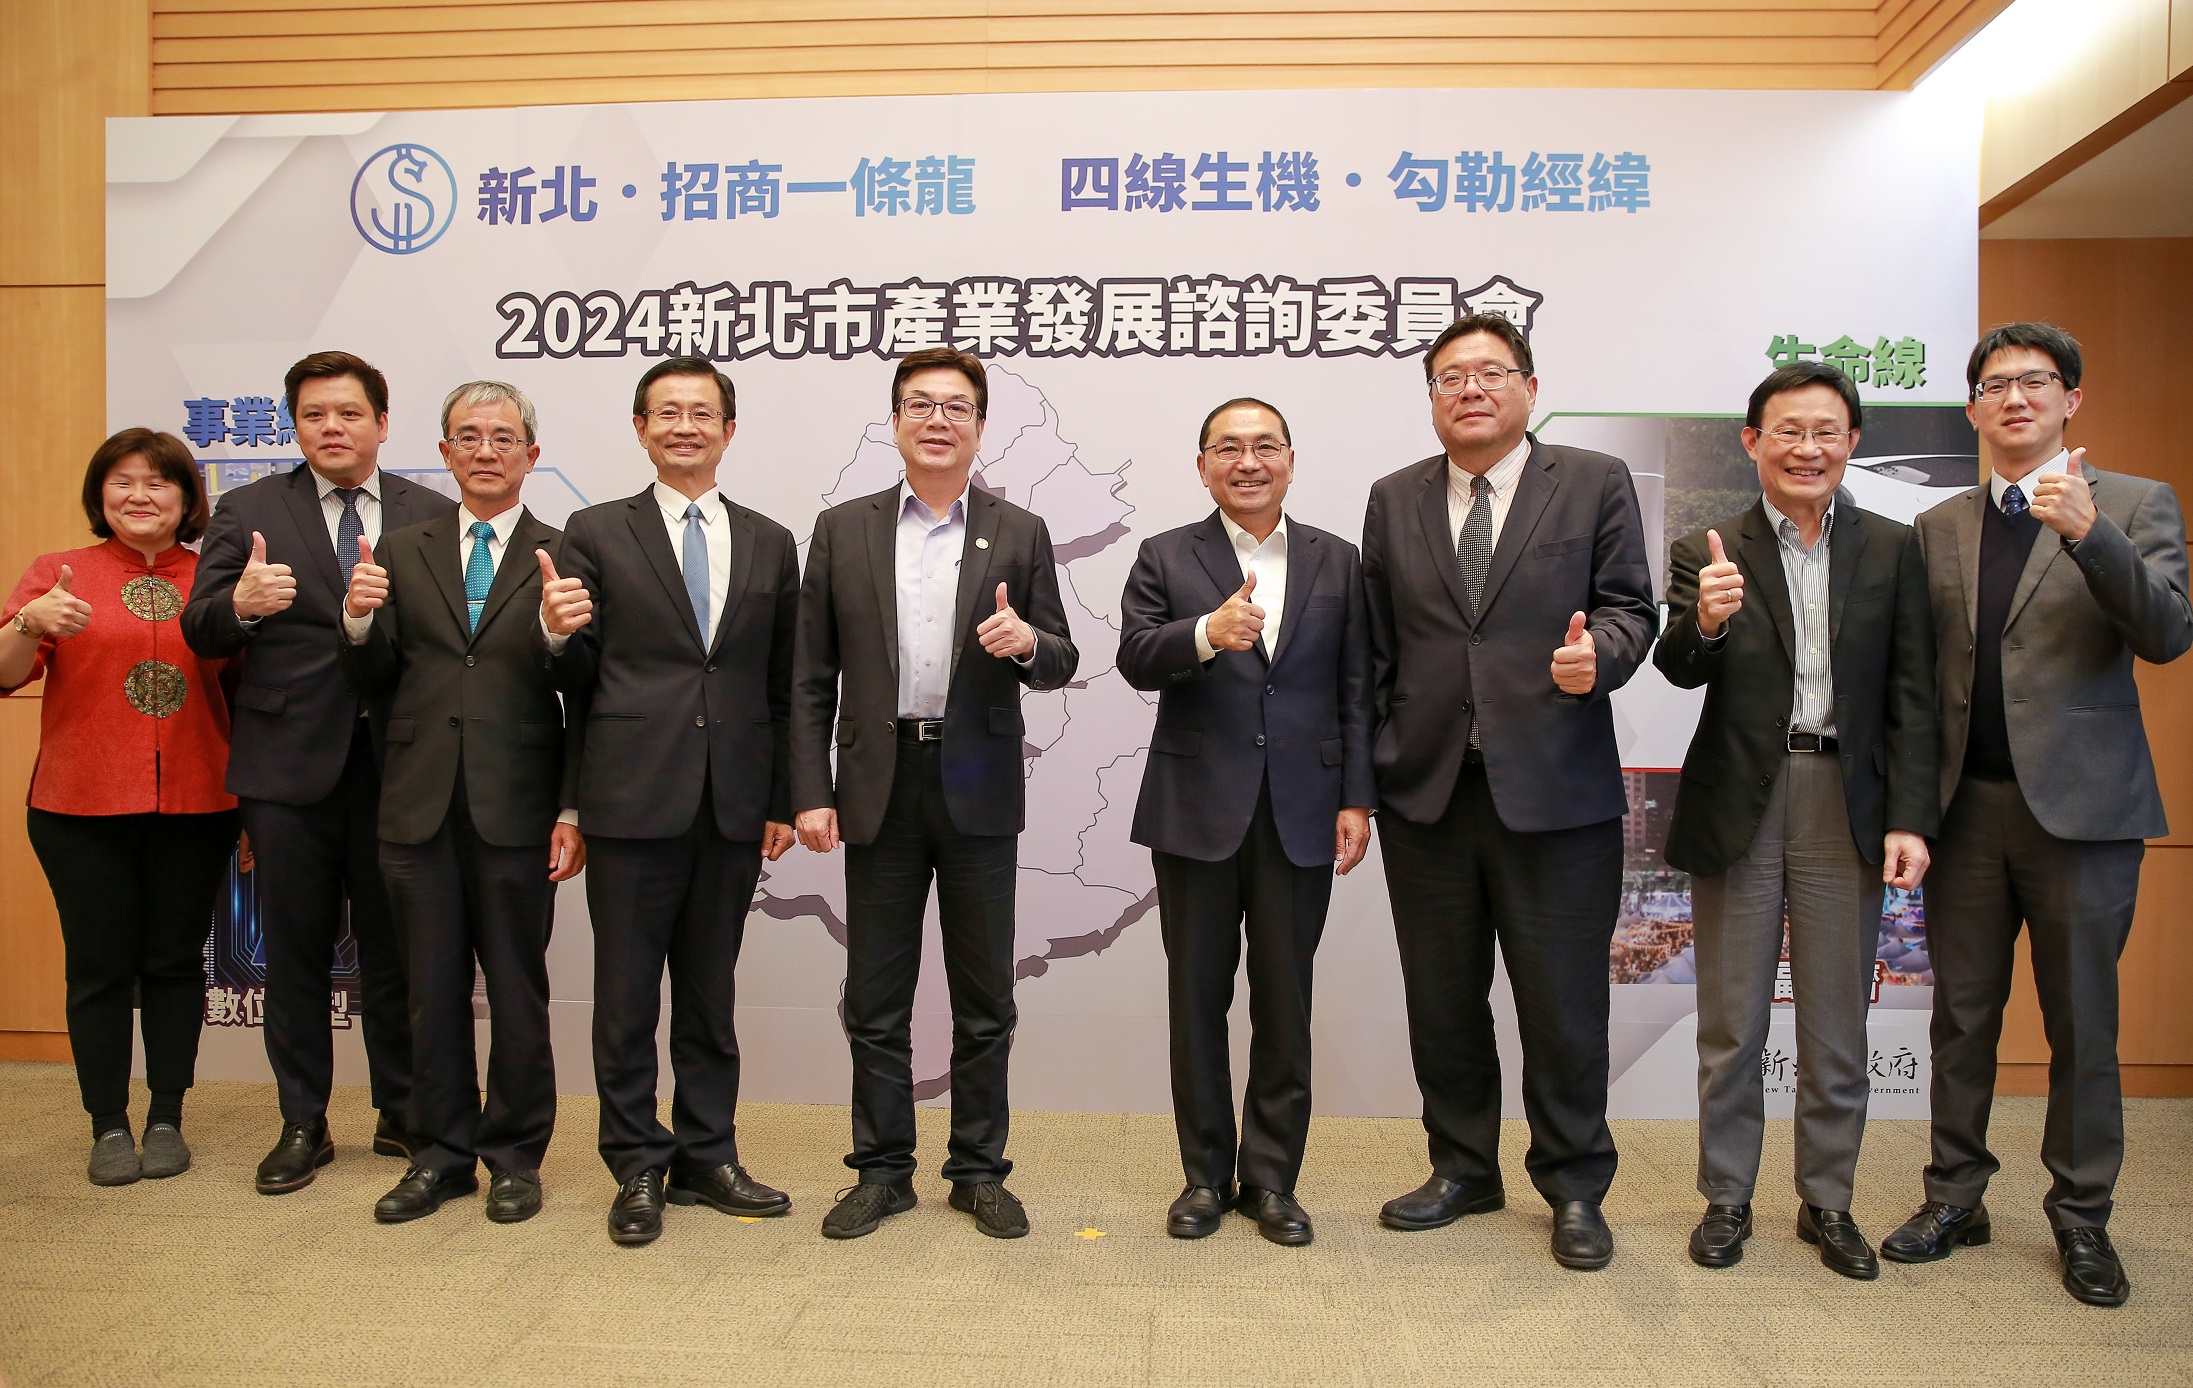 新北市長侯友宜(右4)及副市長劉和然(左5)與工商領袖代表合影。